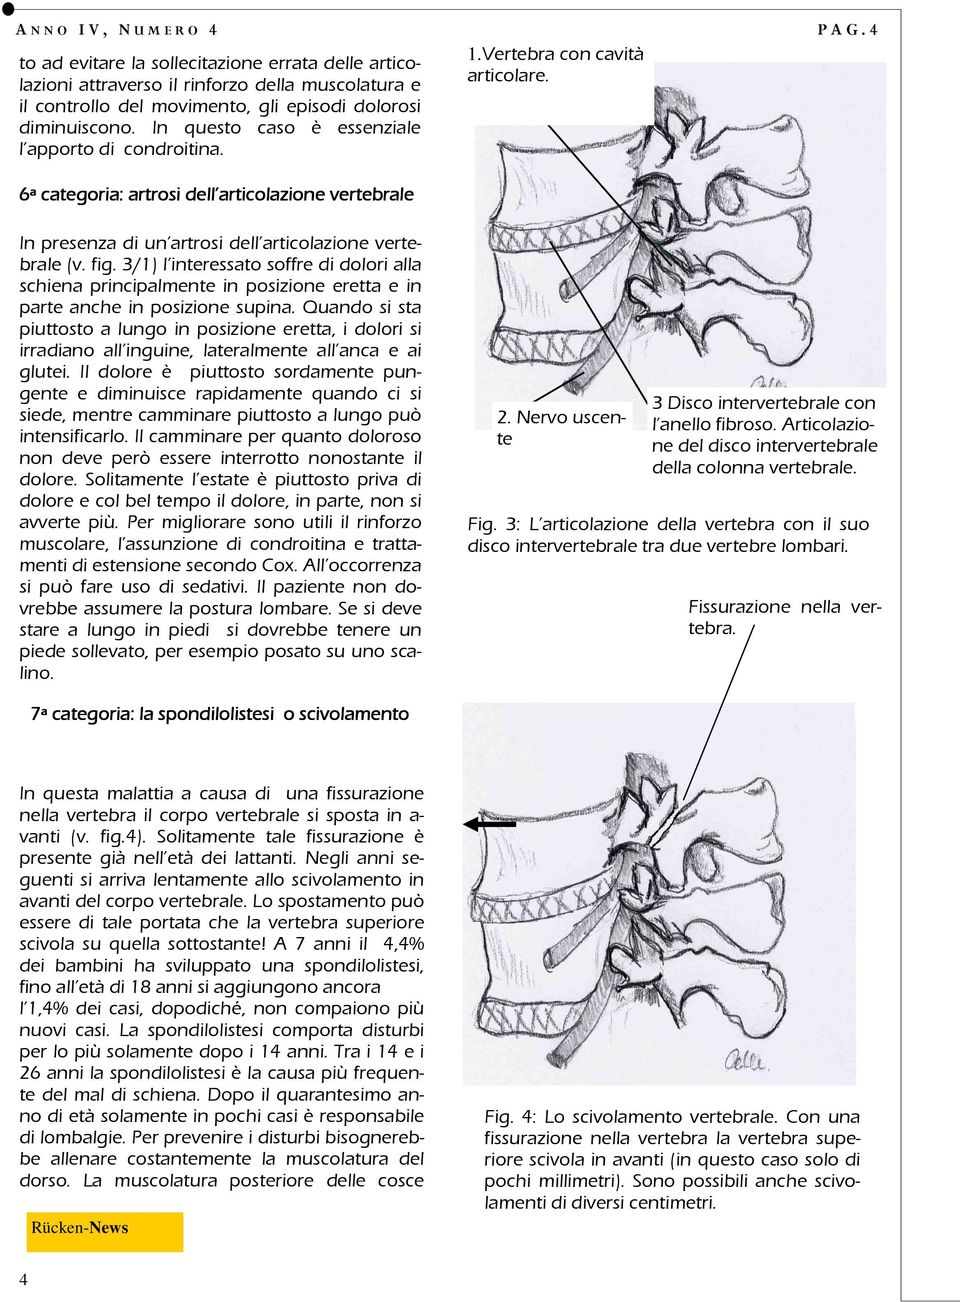 4 In presenza di un artrosi dell articolazione vertebrale (v. fig. 3/1) l interessato soffre di dolori alla schiena principalmente in posizione eretta e in parte anche in posizione supina.